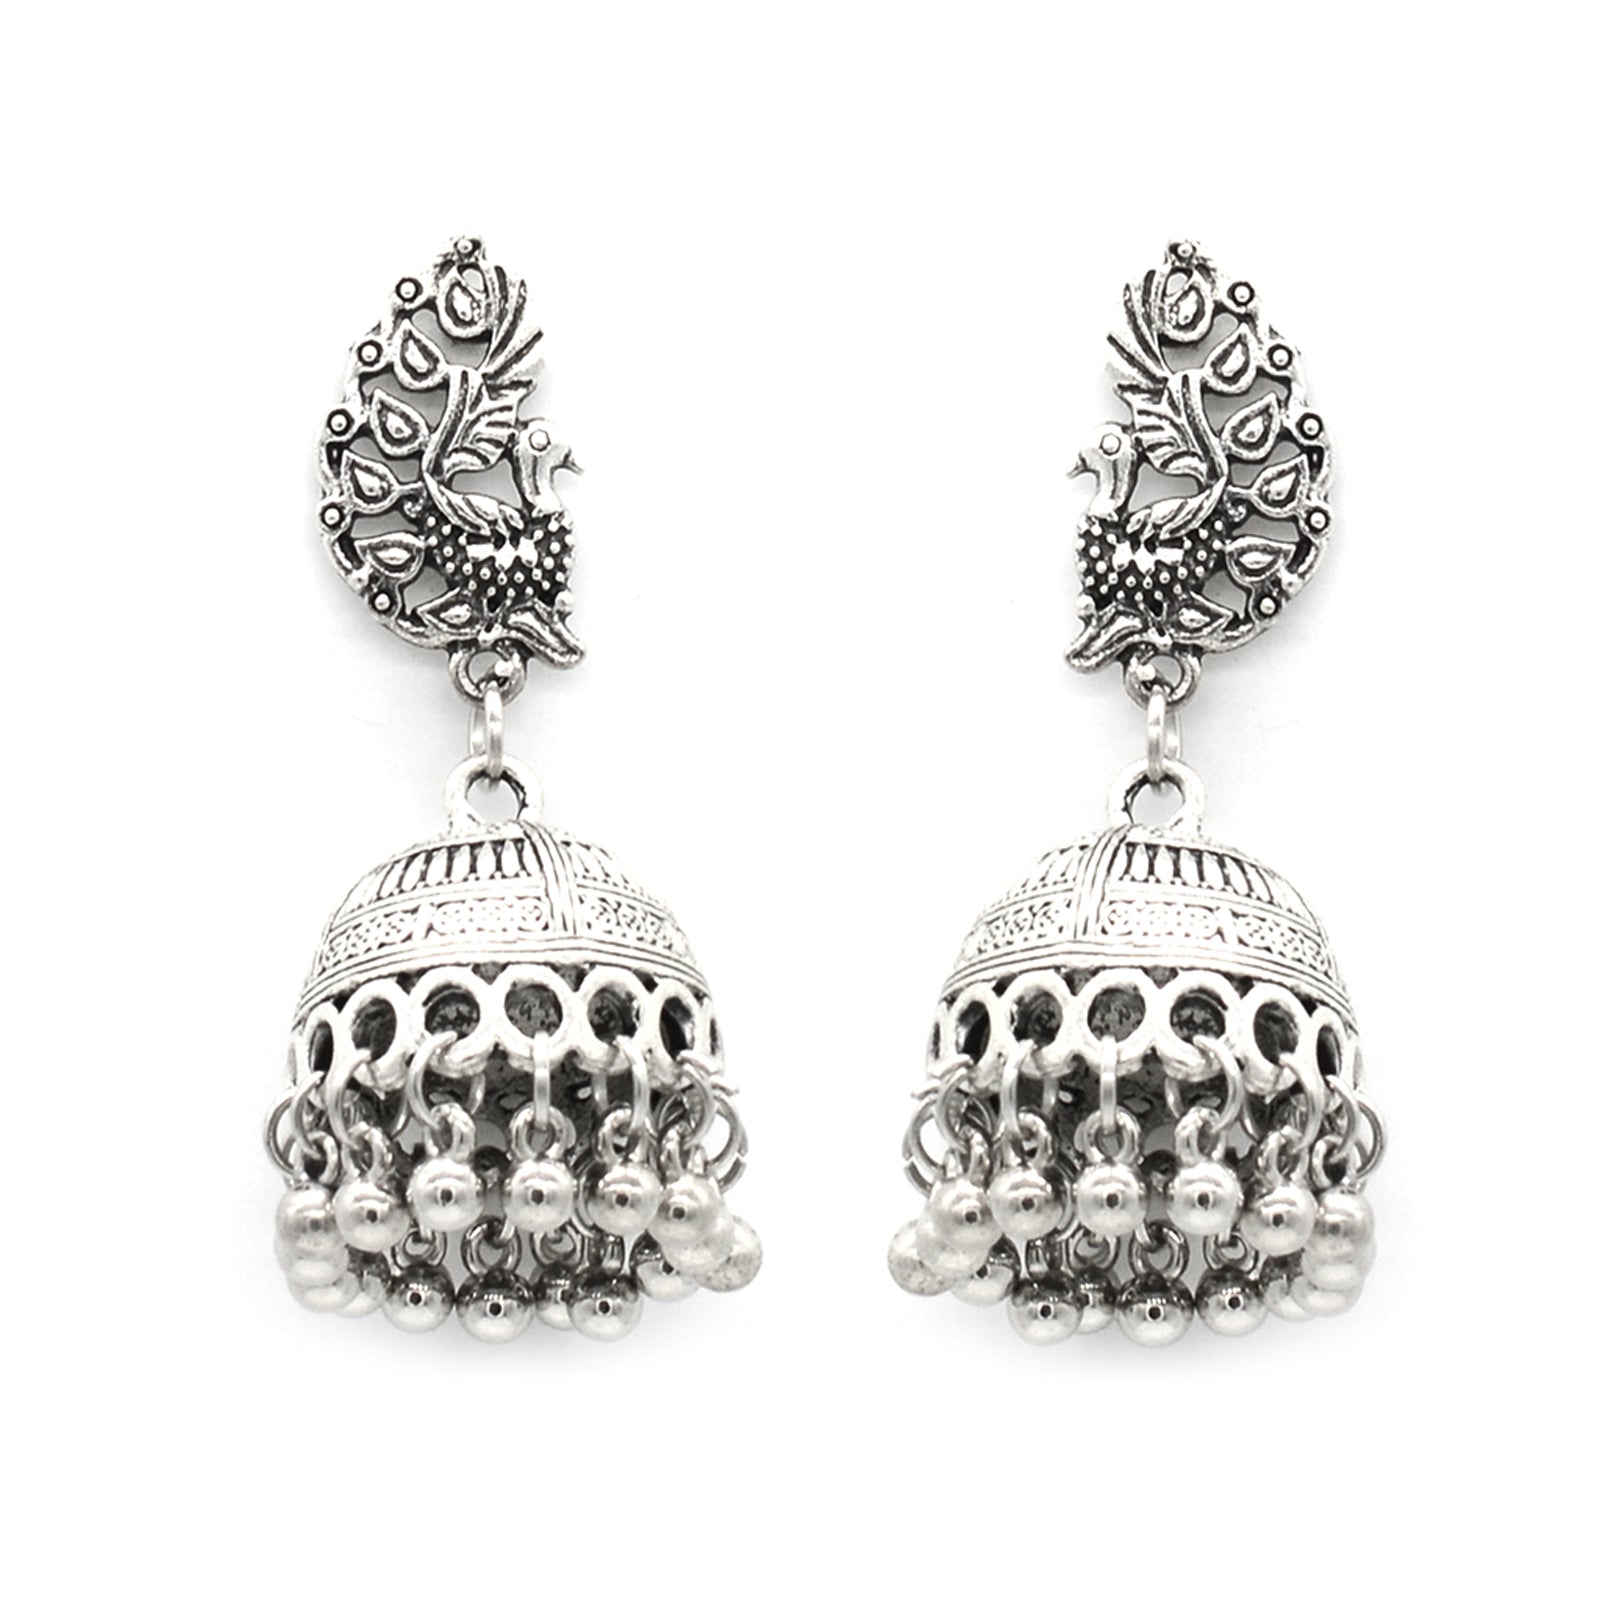 Buy Silver Earrings for Women by Shyle Online  Ajiocom